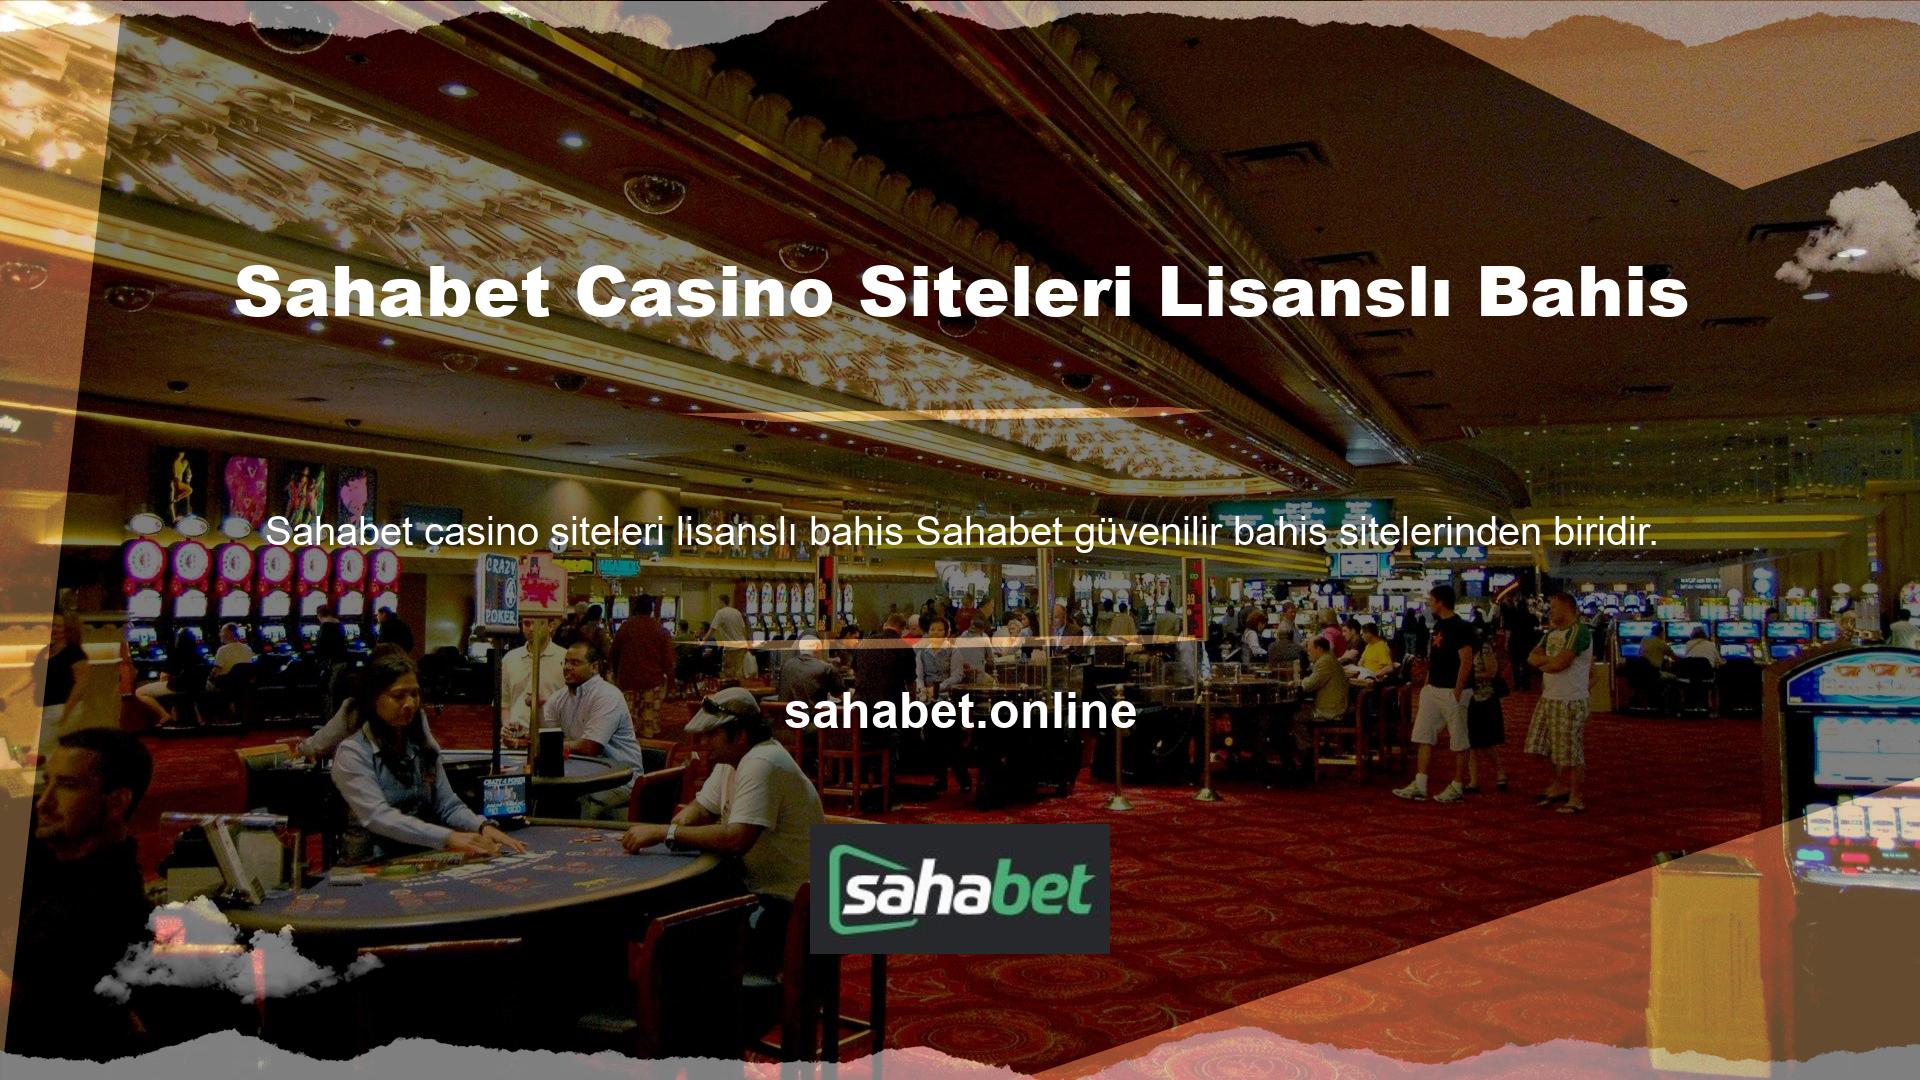 Sahabet casino siteleri lisanslı bahis